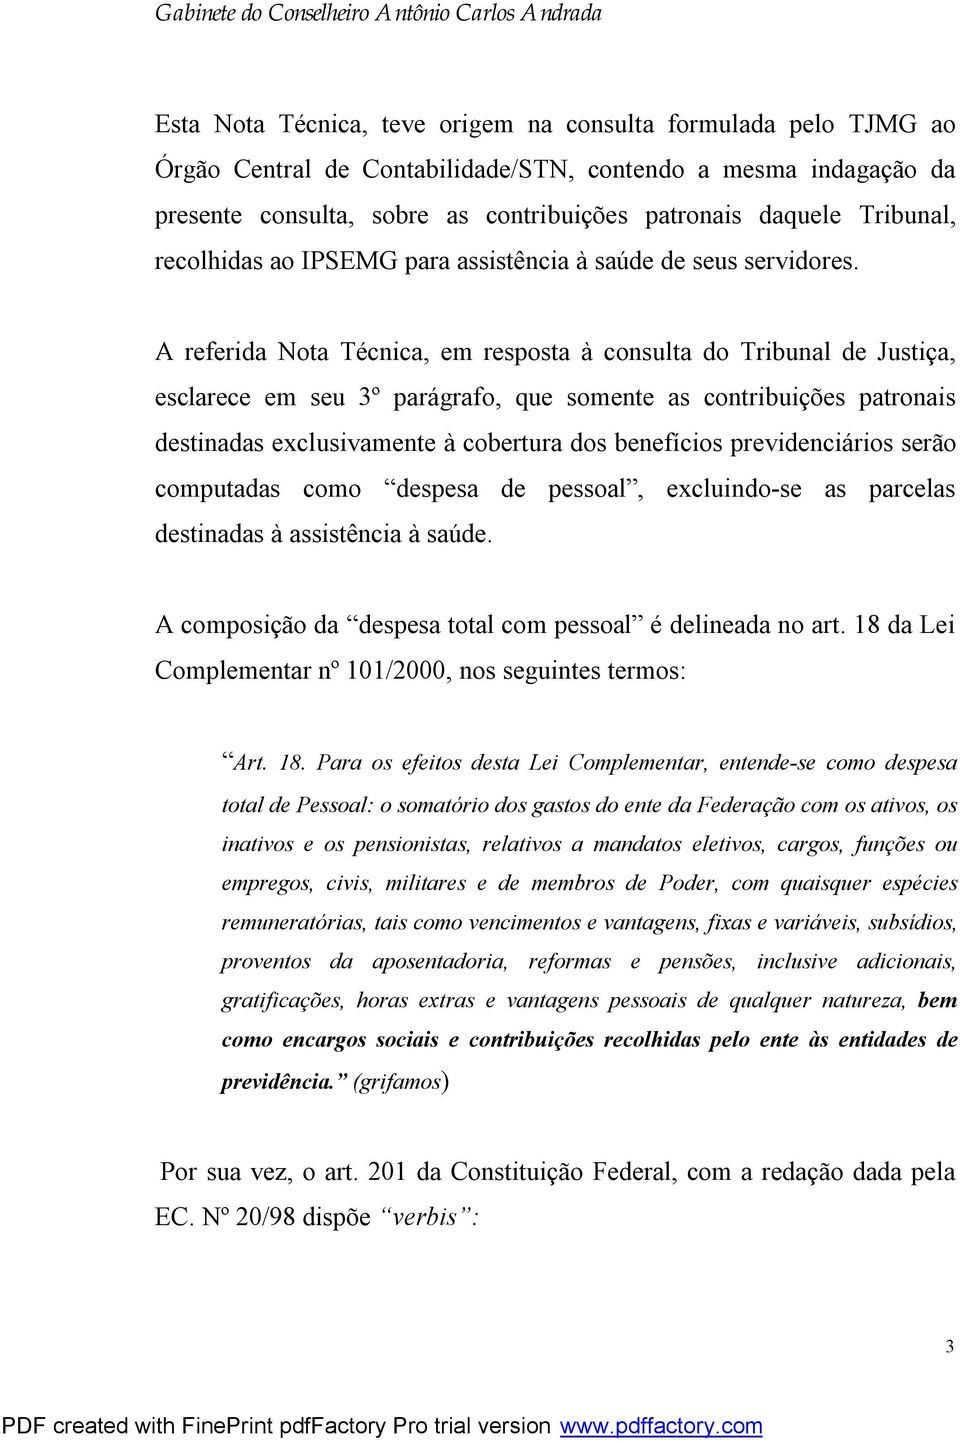 A referida Nota Técnica, em resposta à consulta do Tribunal de Justiça, esclarece em seu 3º parágrafo, que somente as contribuições patronais destinadas exclusivamente à cobertura dos benefícios